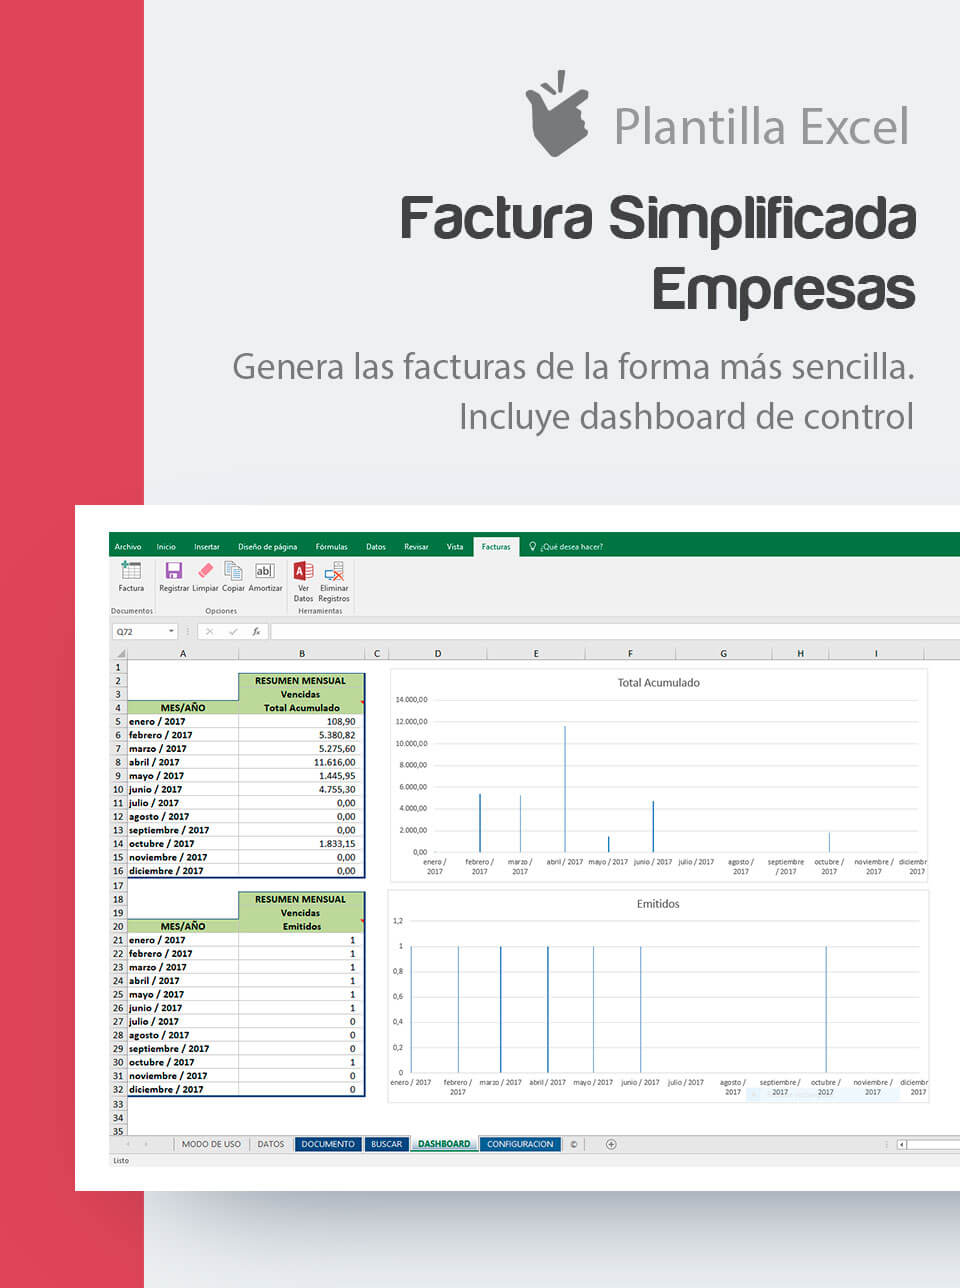 Modelo De Factura Excel Plantilla de Facturas Simplificadas para empresas | Factura simplificada  empresas